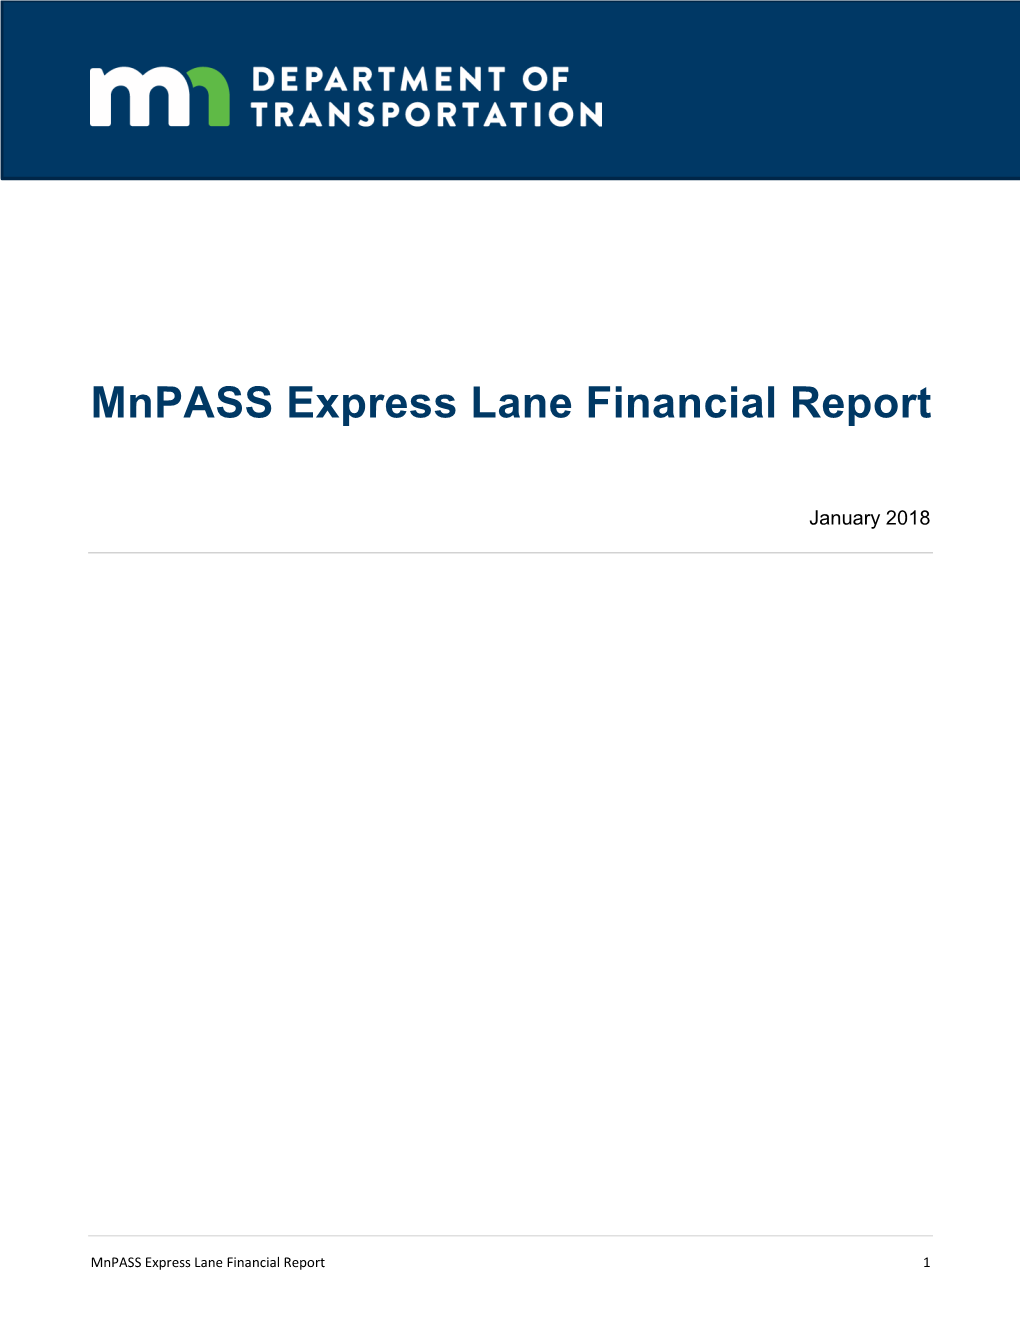 2018 Mnpass Express Lane Financial Report (PDF)